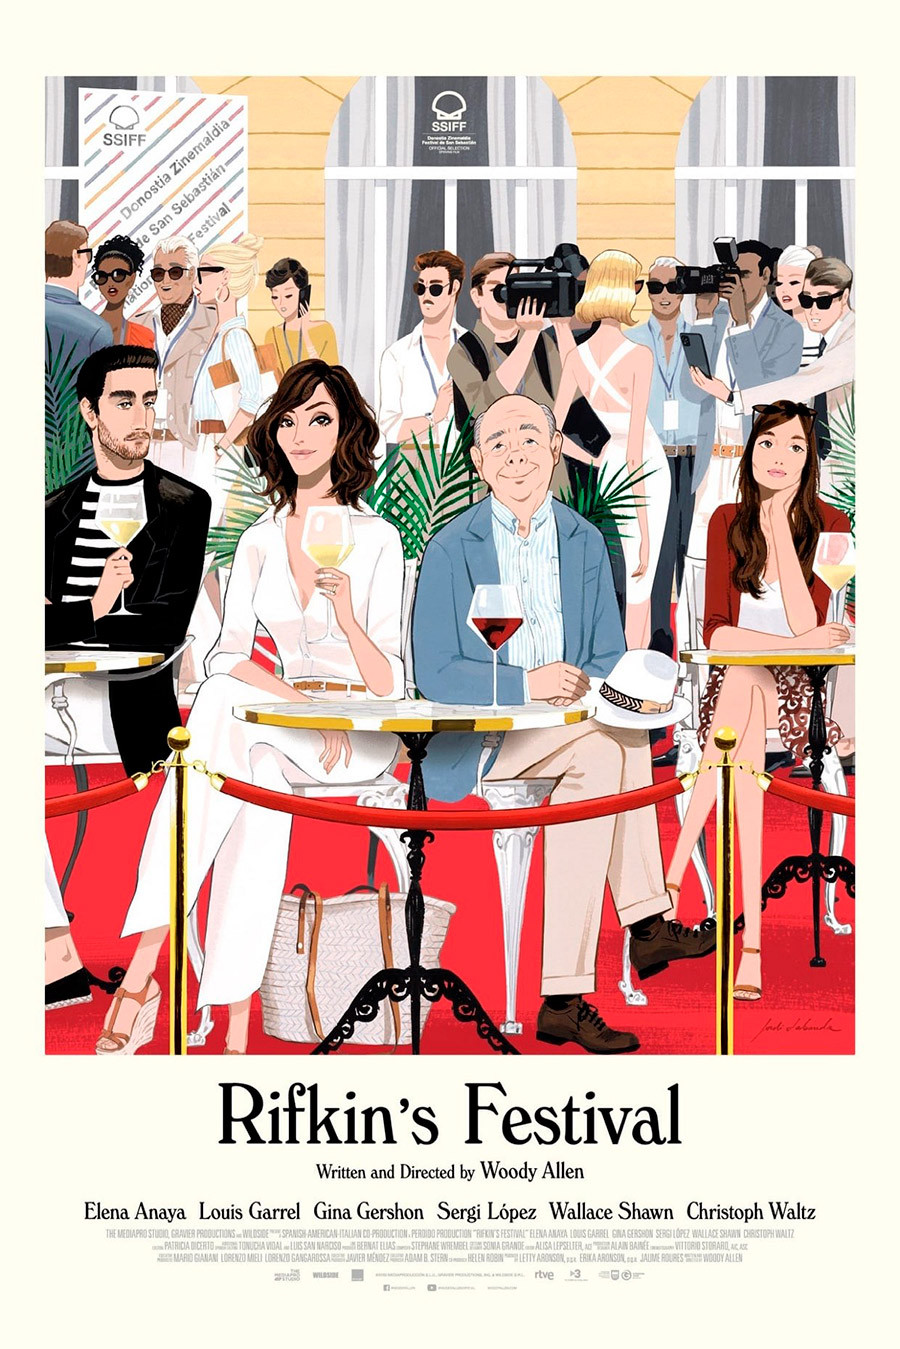 Película Rifkin's Festival de Woody Allen, cartel ilustración de Jordi Lavanda